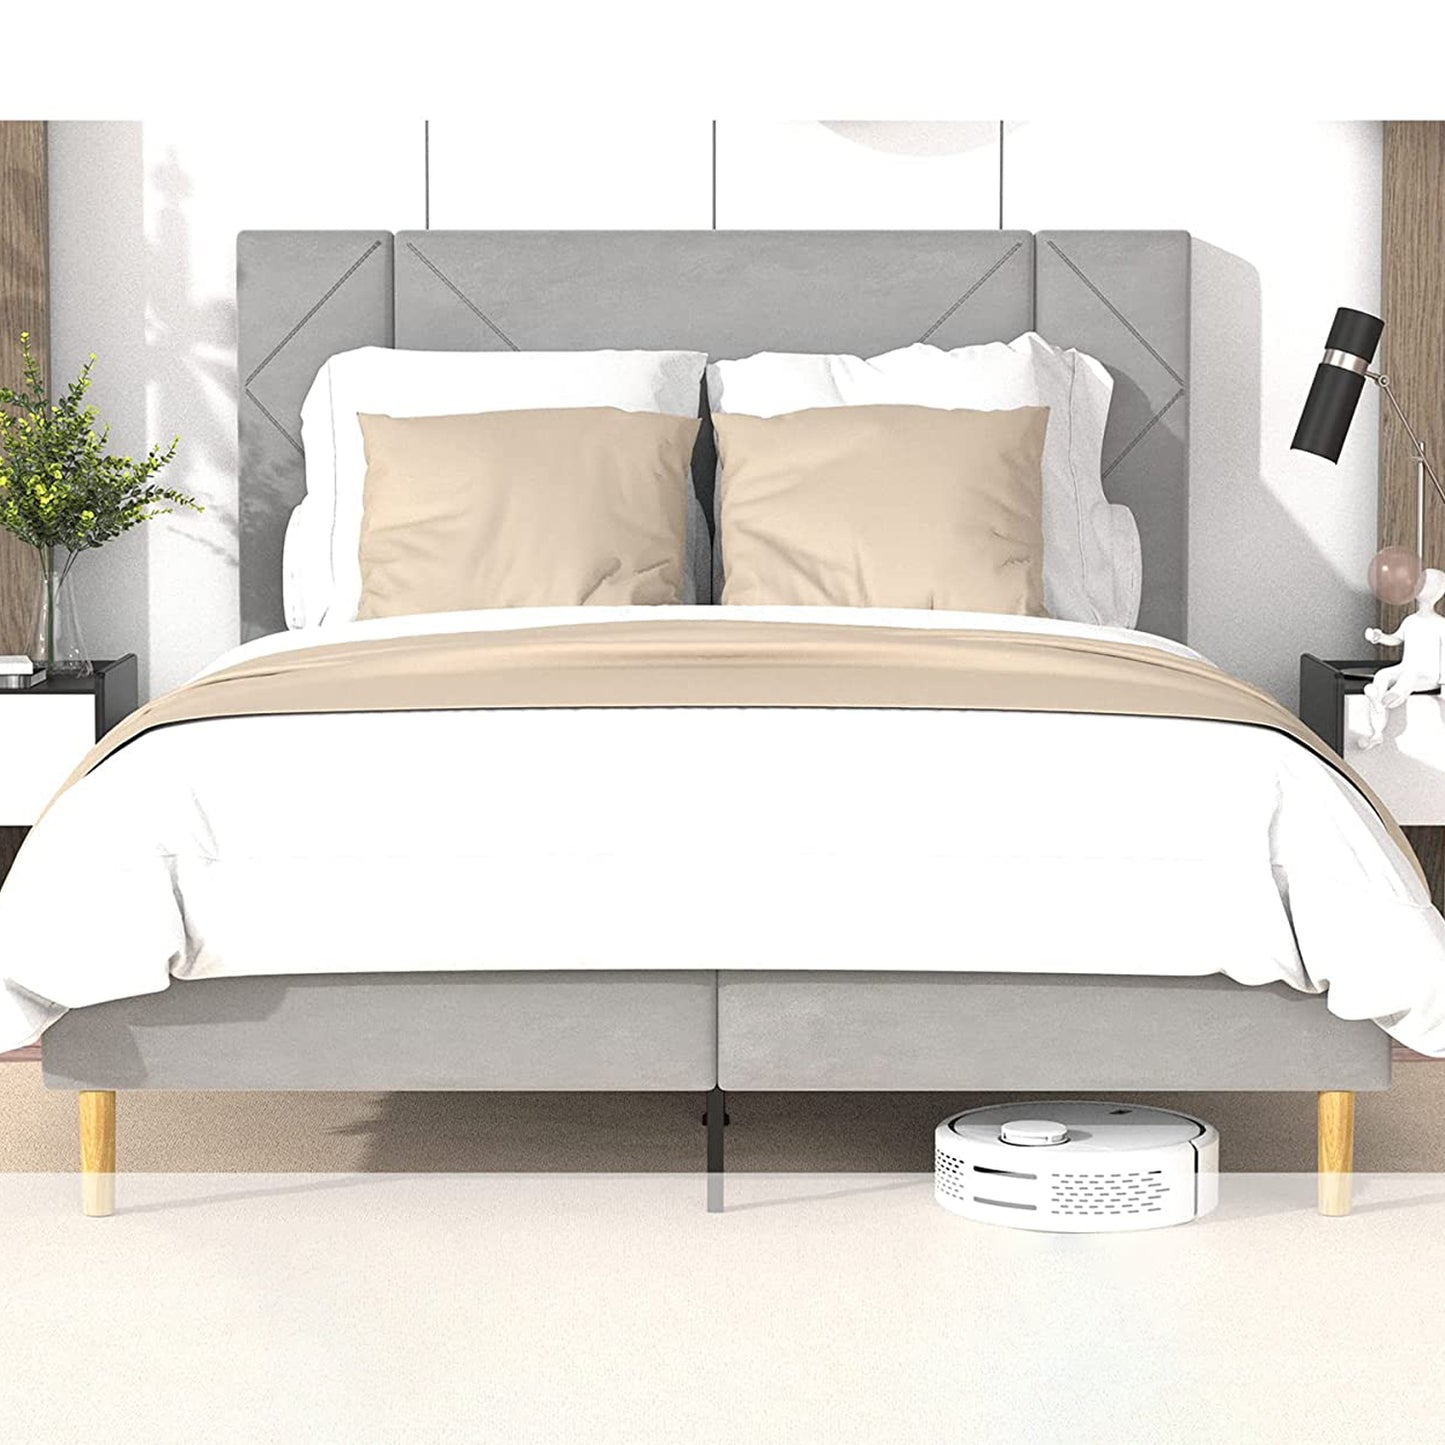 SYNGAR Full Bed Frame, New Upgrade Full Size Velvet Upholstered Platform Bed Frame with Elegant Headboard, Bedroom Furniture Wooden Frame Platform Bed Frame, No Box Spring Needed, Gray